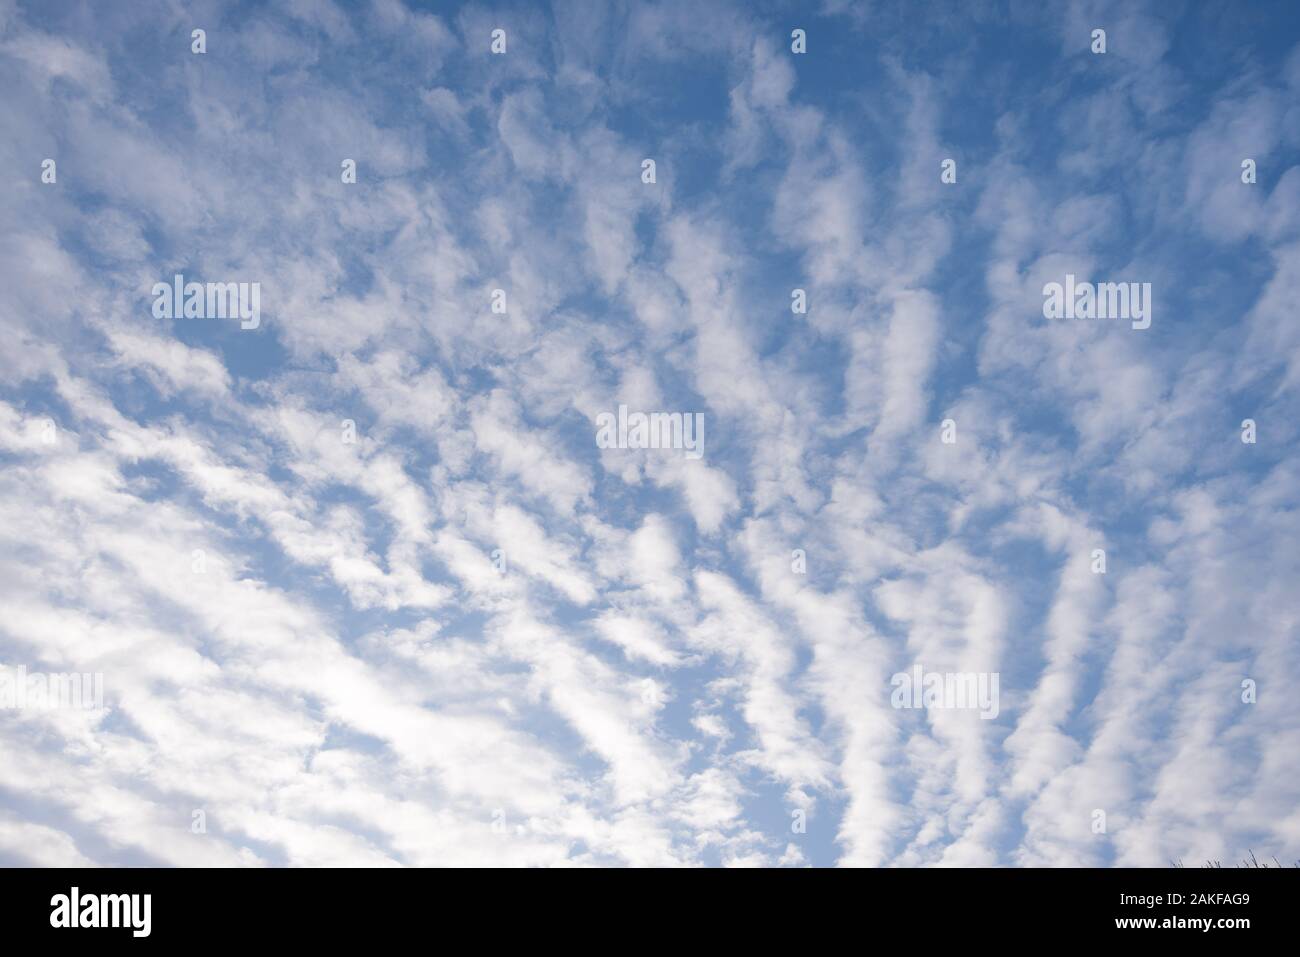 Mackerel sky Stock Photo